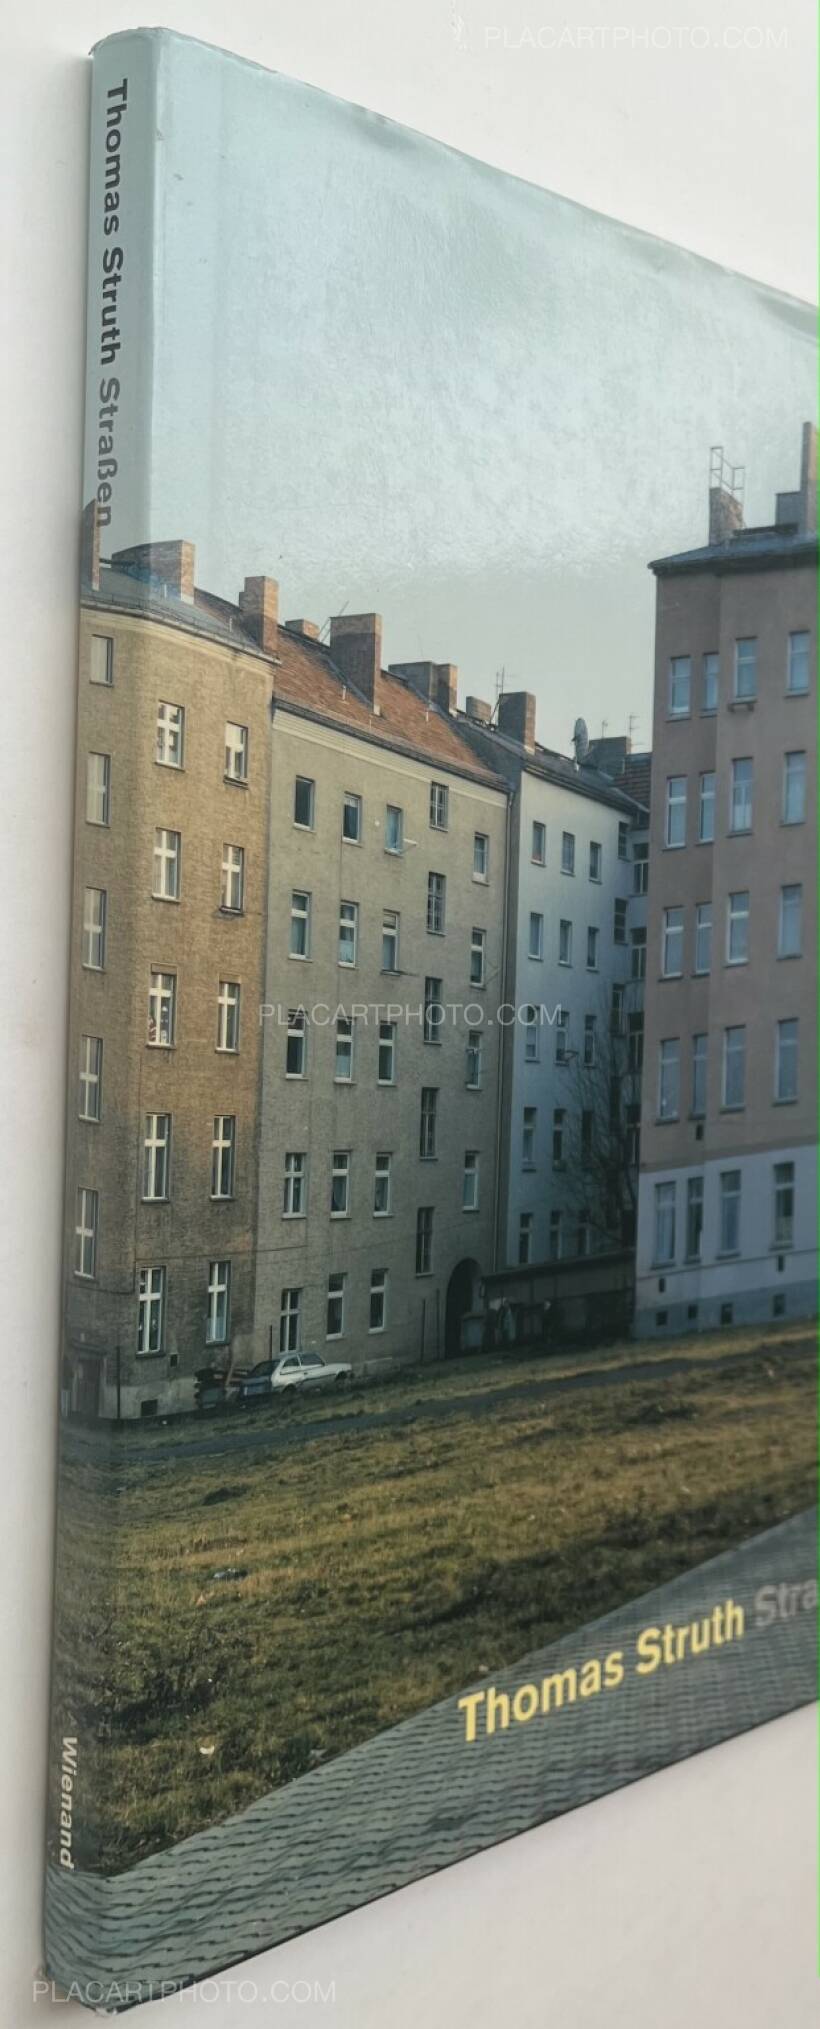 Thomas Struth: Strassen : Fotografie 1976 bis 1995, Wienand, 1995 